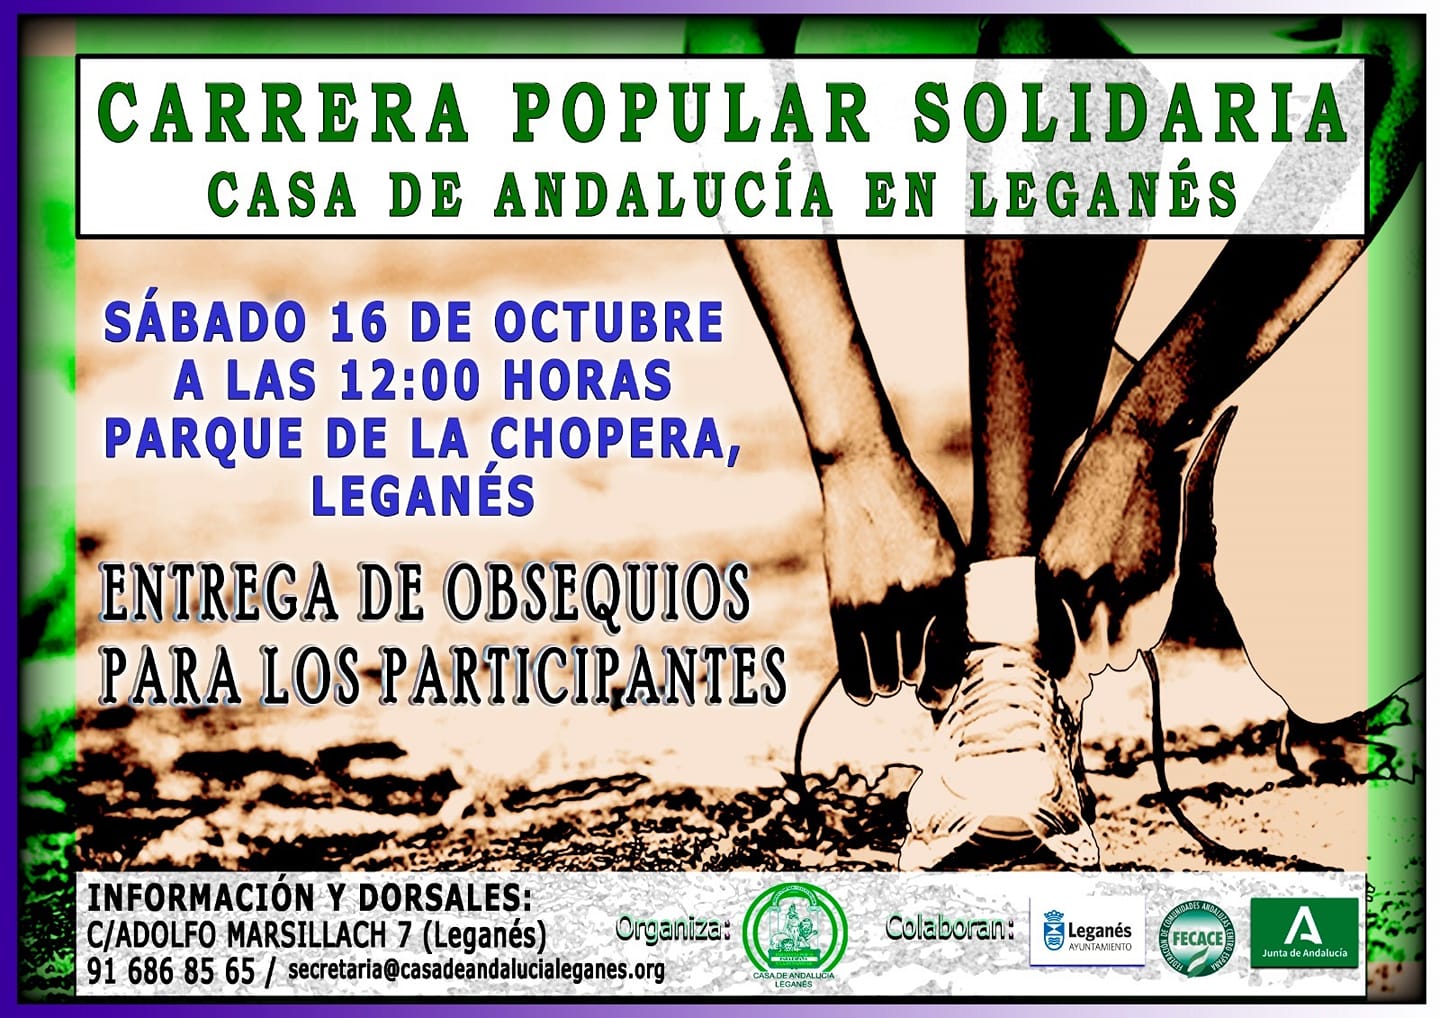 Carrera Popular Solidaria Casa de Andalucía en Leganés